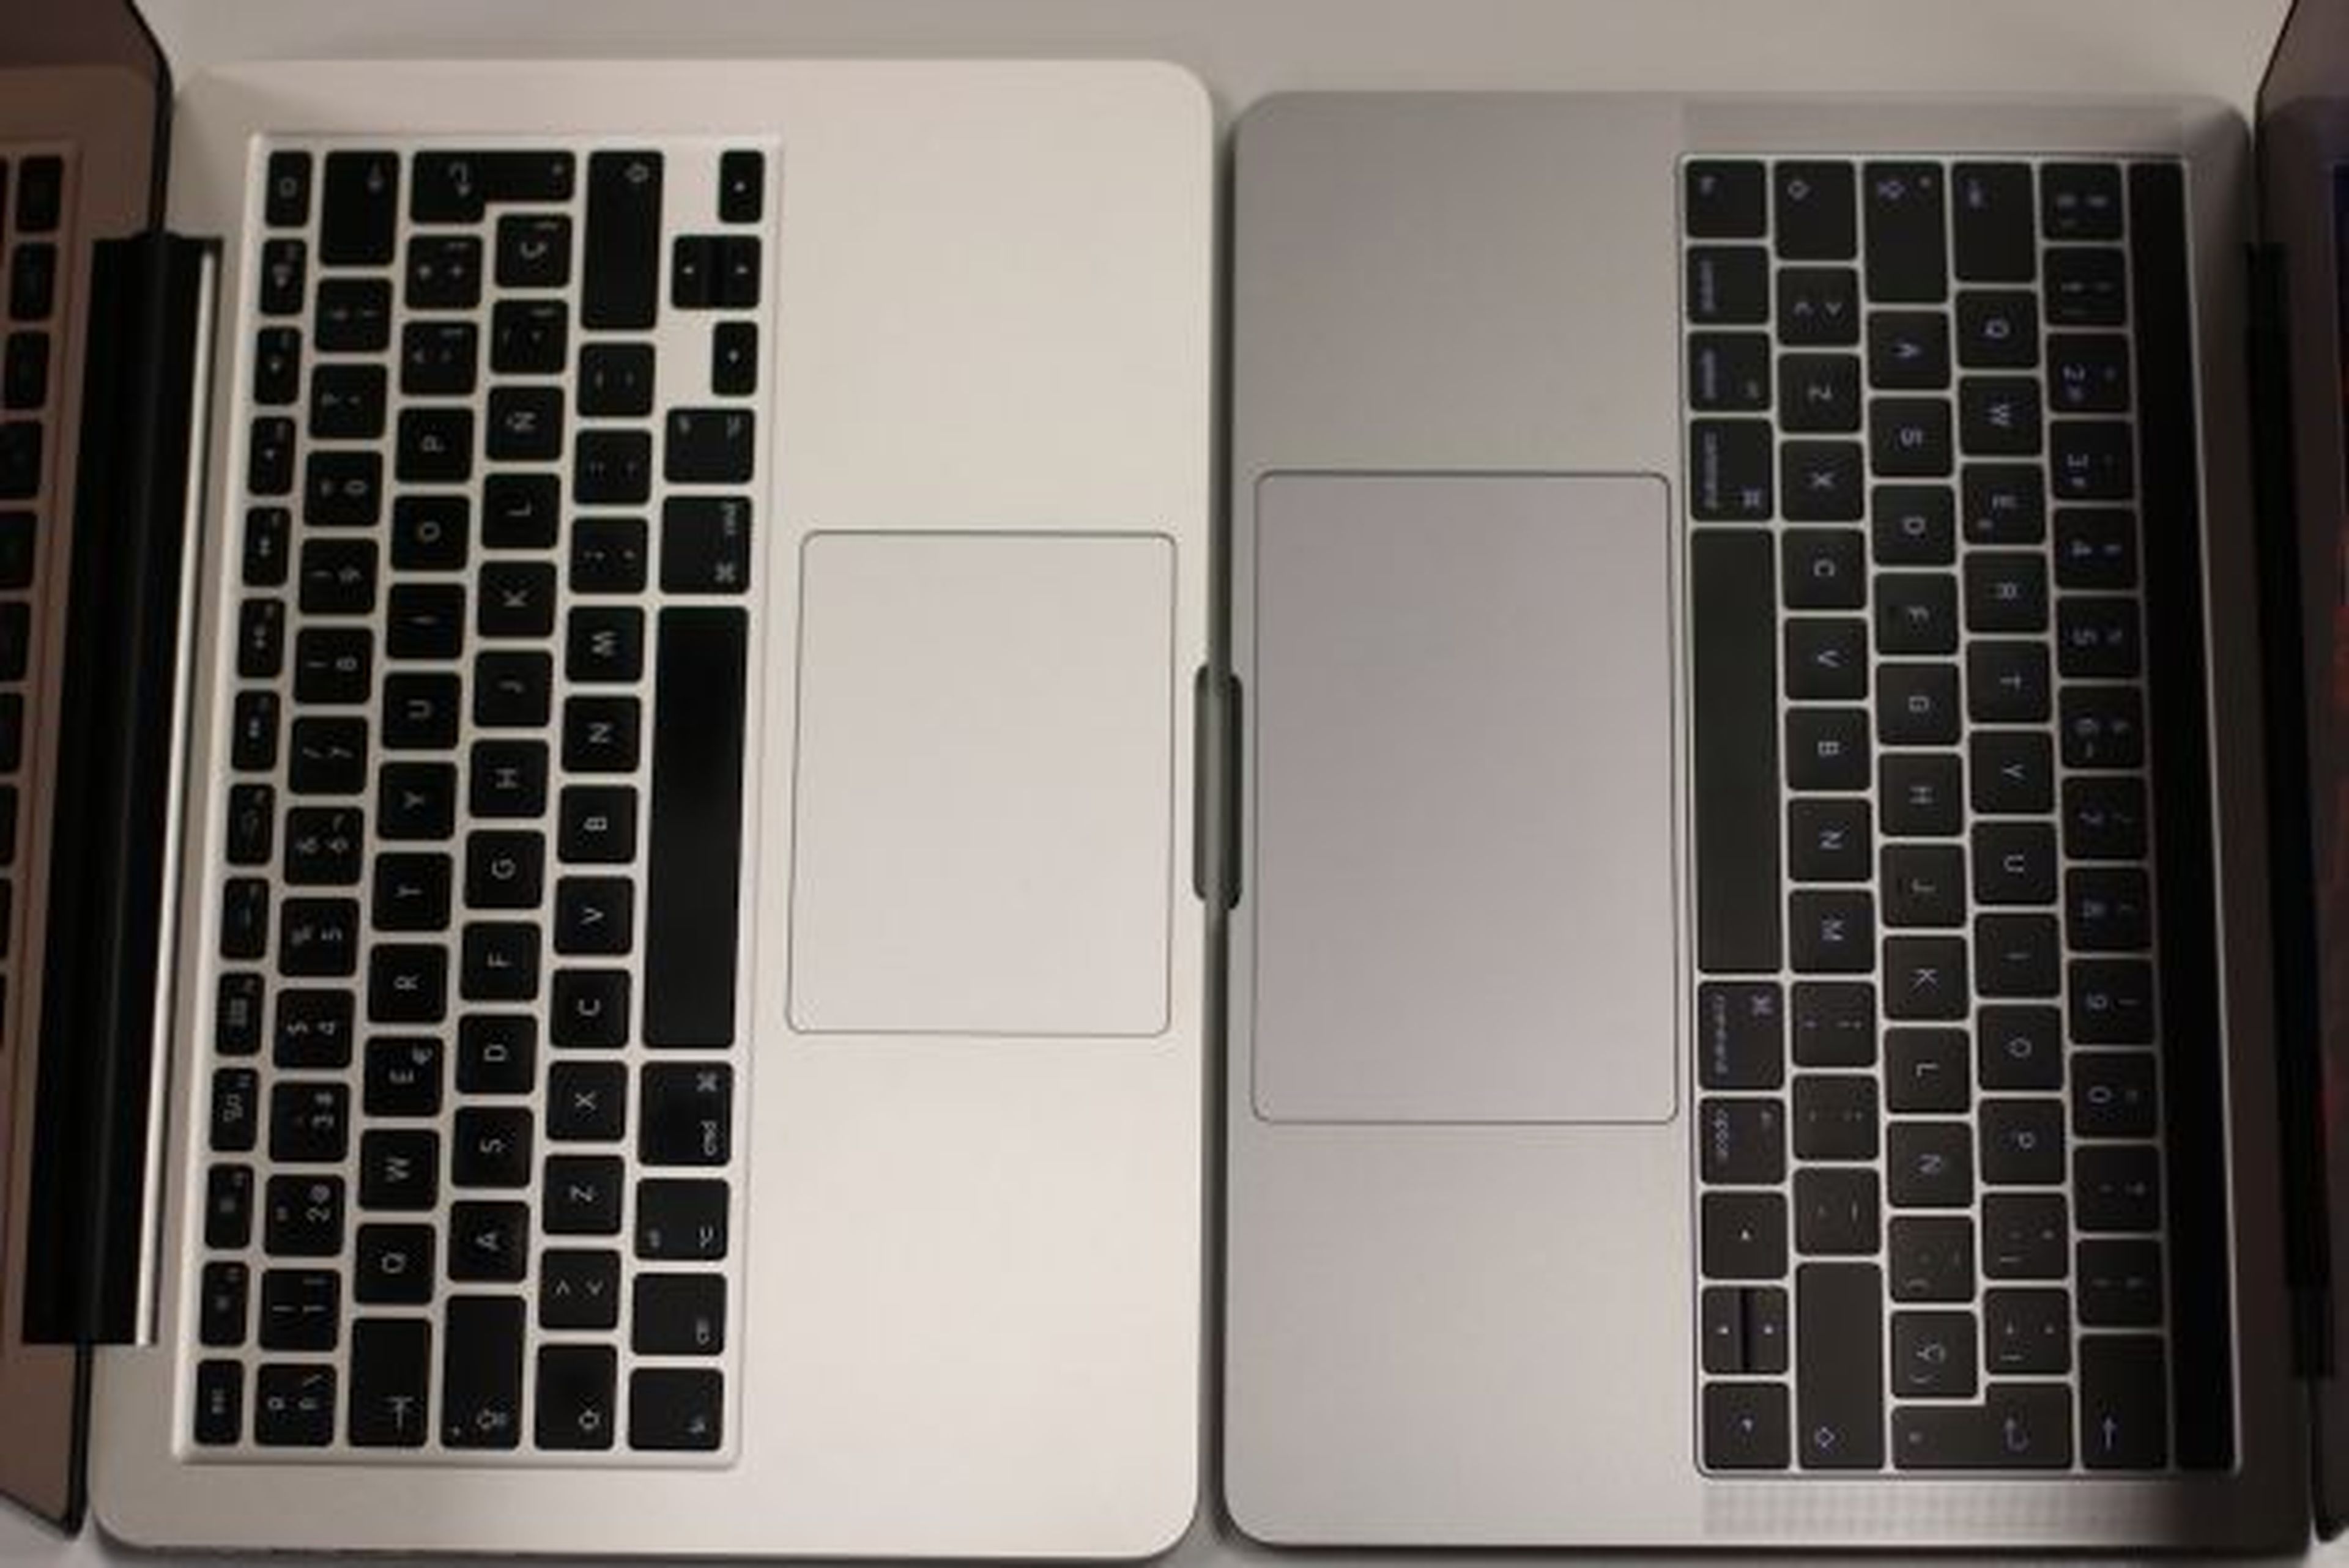 MacBook Pro 13 vs MacBook Pro 15